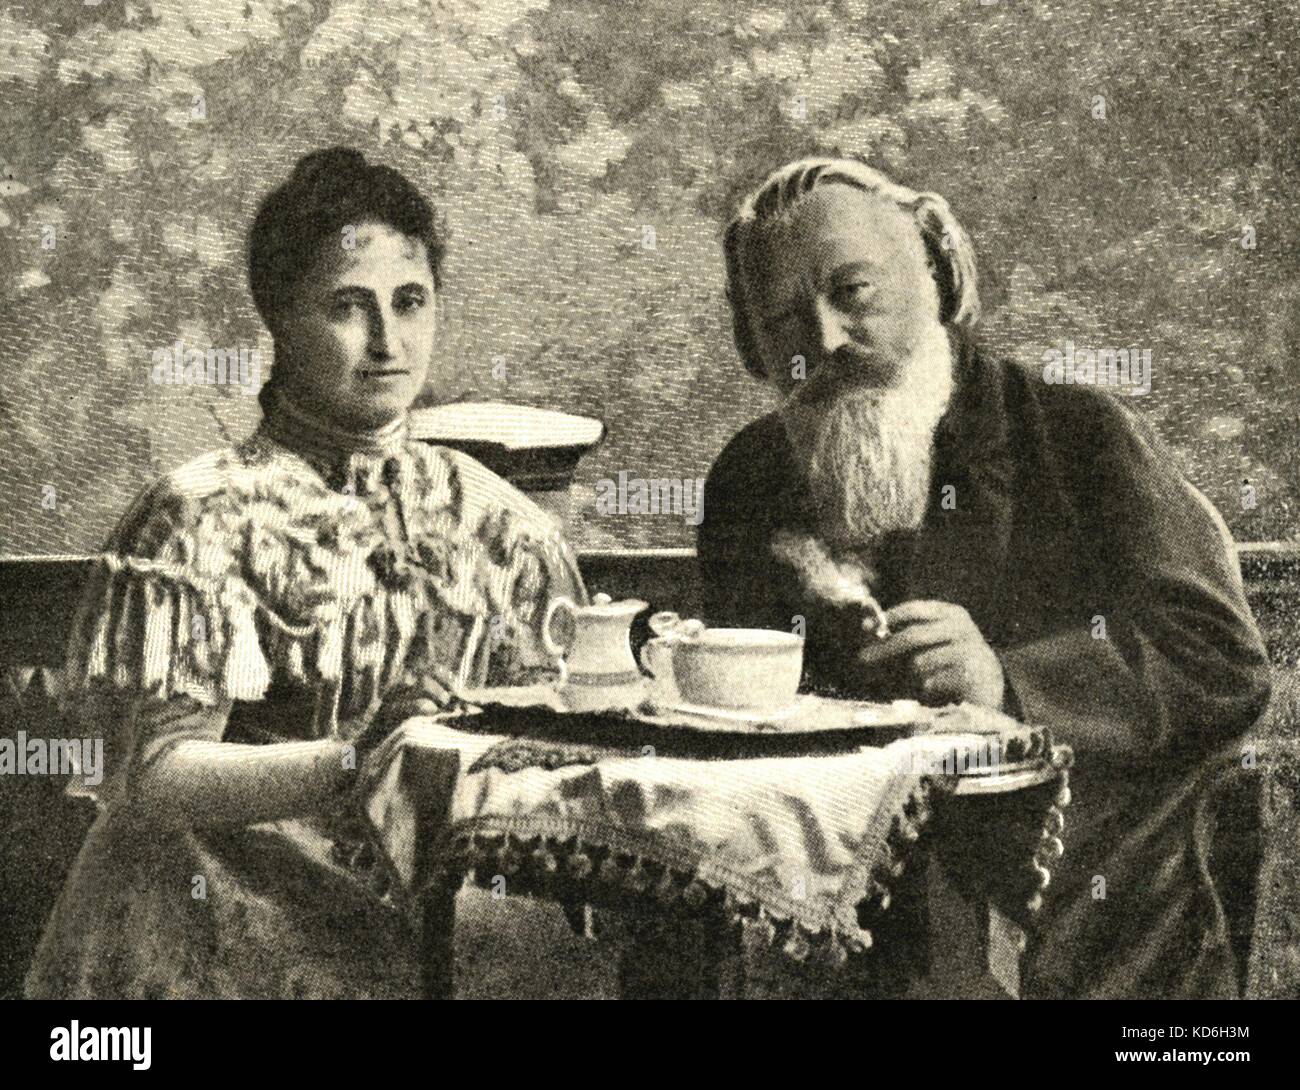 Johann Strauss II Frau Adele mit Brahms in Ischl. Strauss II: Der oesterreichische Komponist, Dirigent und Geiger (1825-1899). Brahms: Deutscher Komponist, 1833-1897 Stockfoto